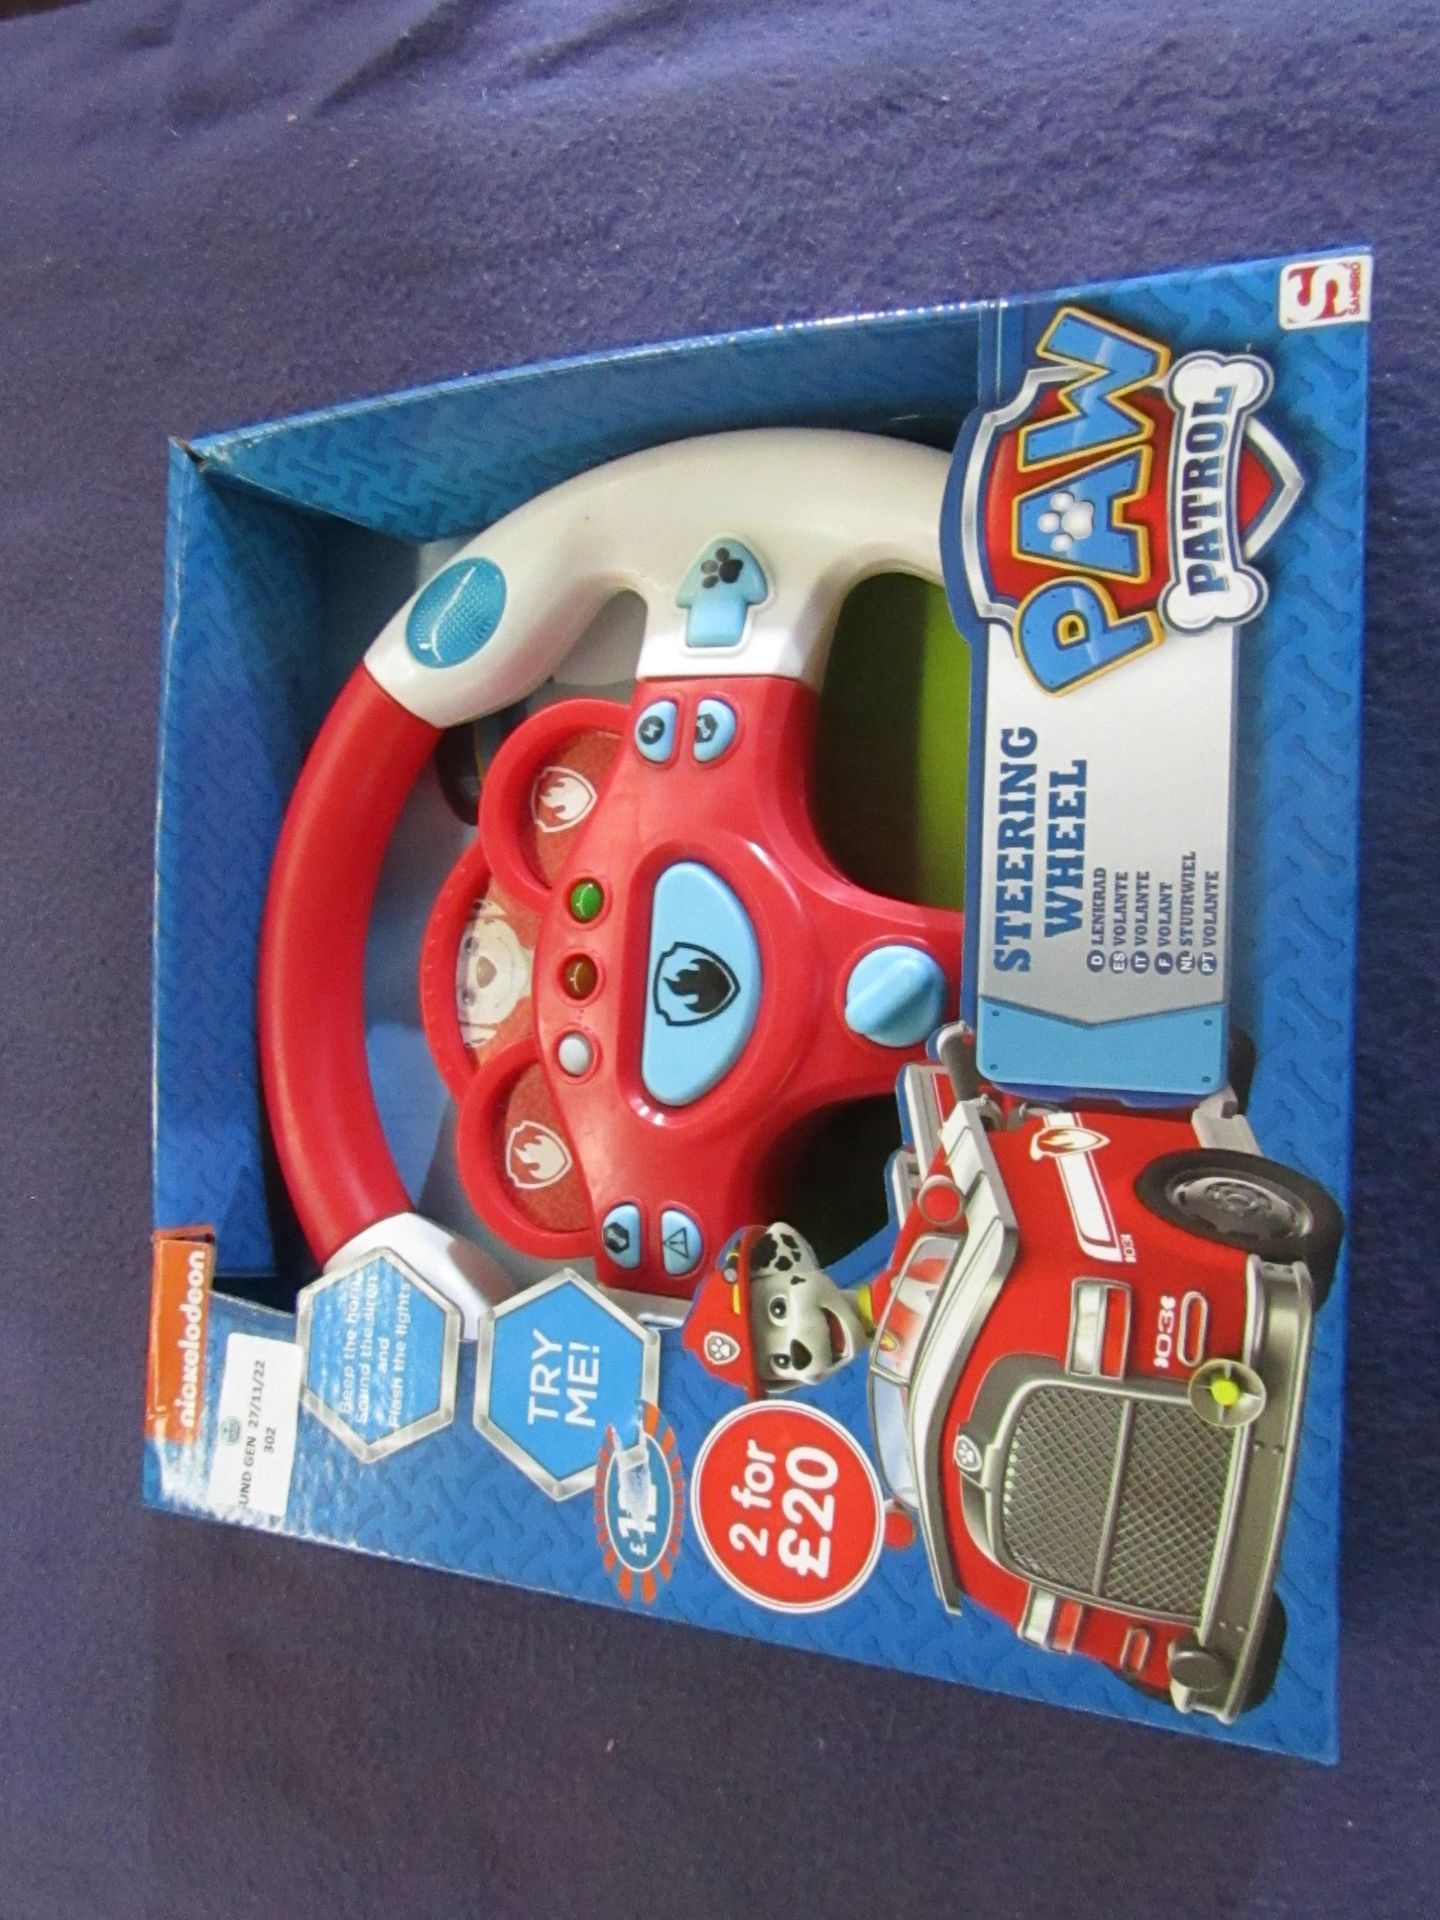 Nickelodeon - Paw Patrol Steering Wheel - Unused & Boxed.